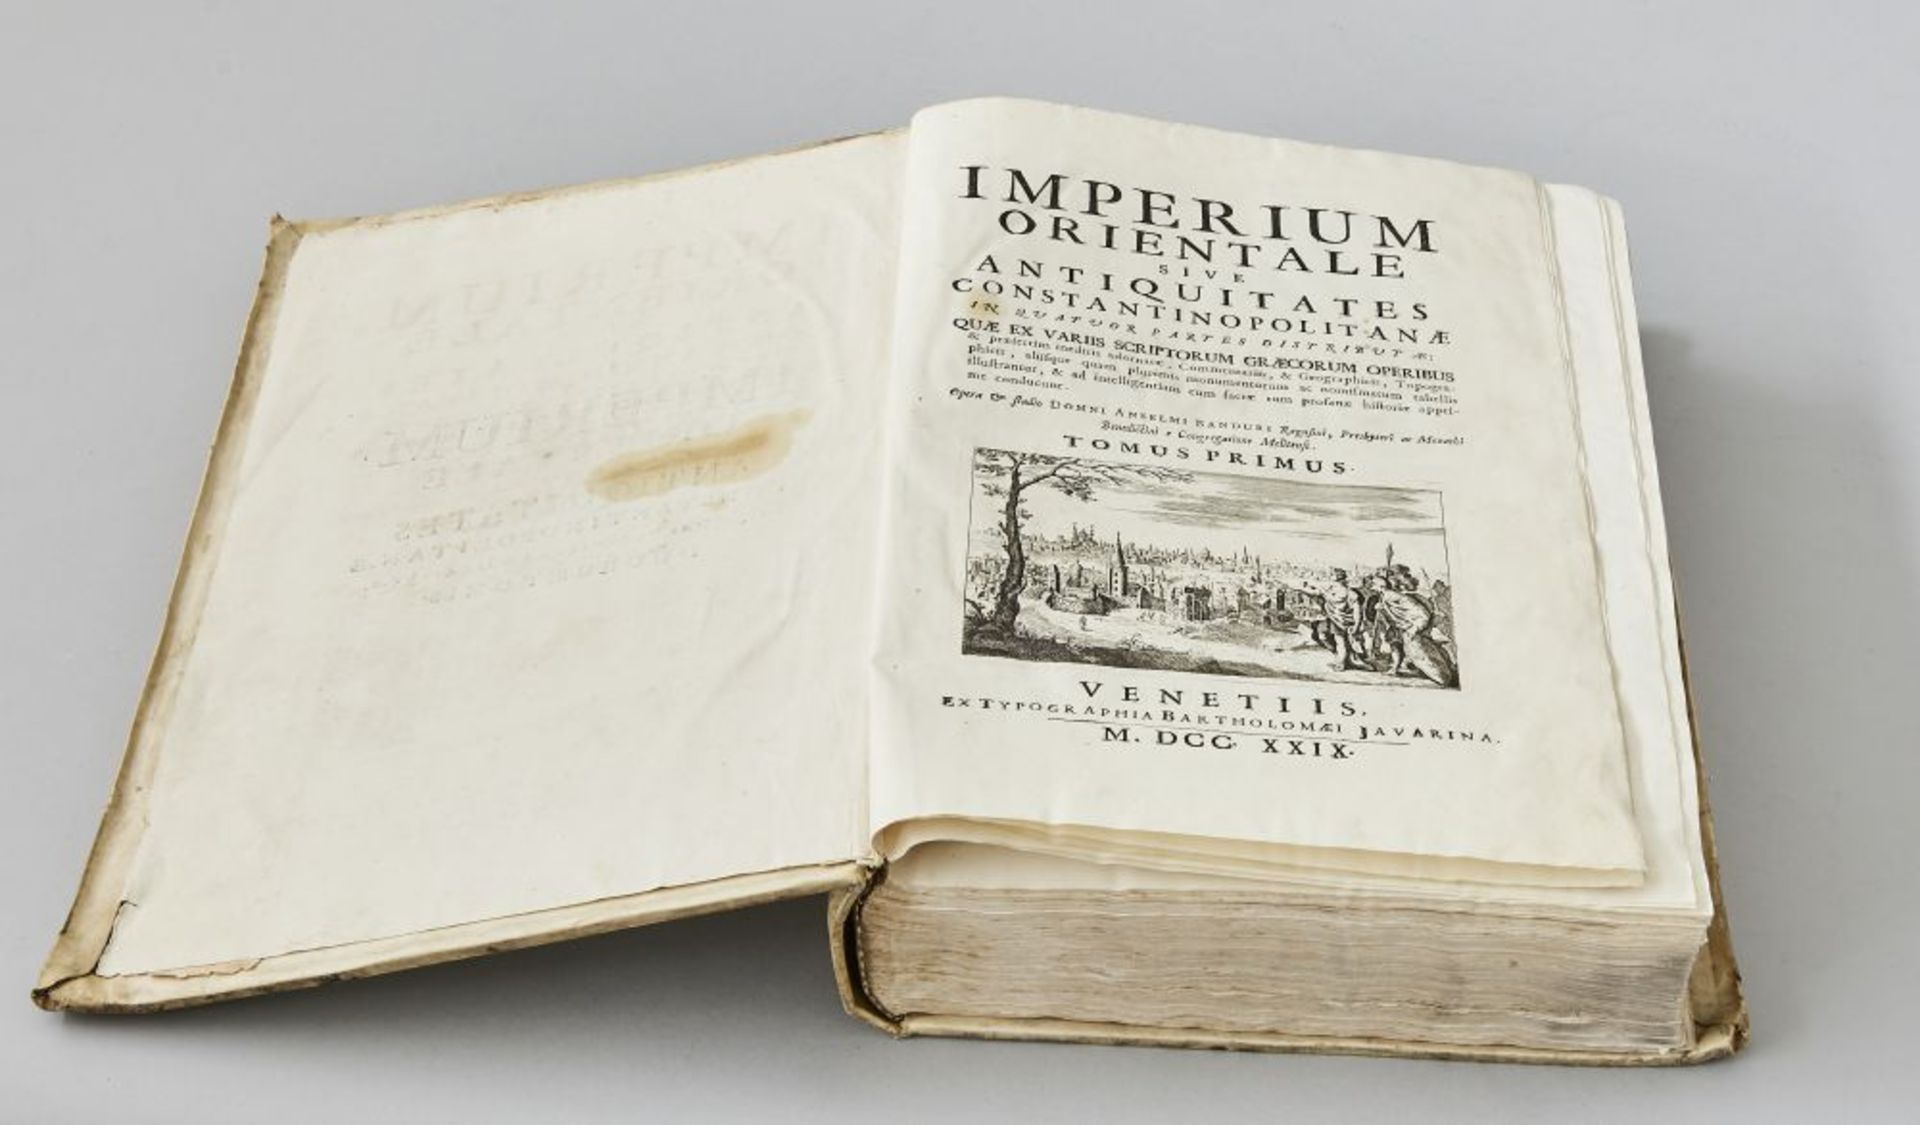 Imperium OrientaleVenetis Bartholomaei Javarina, Atlas mit Karten, von 1729, gebunden. Buch - Image 2 of 2